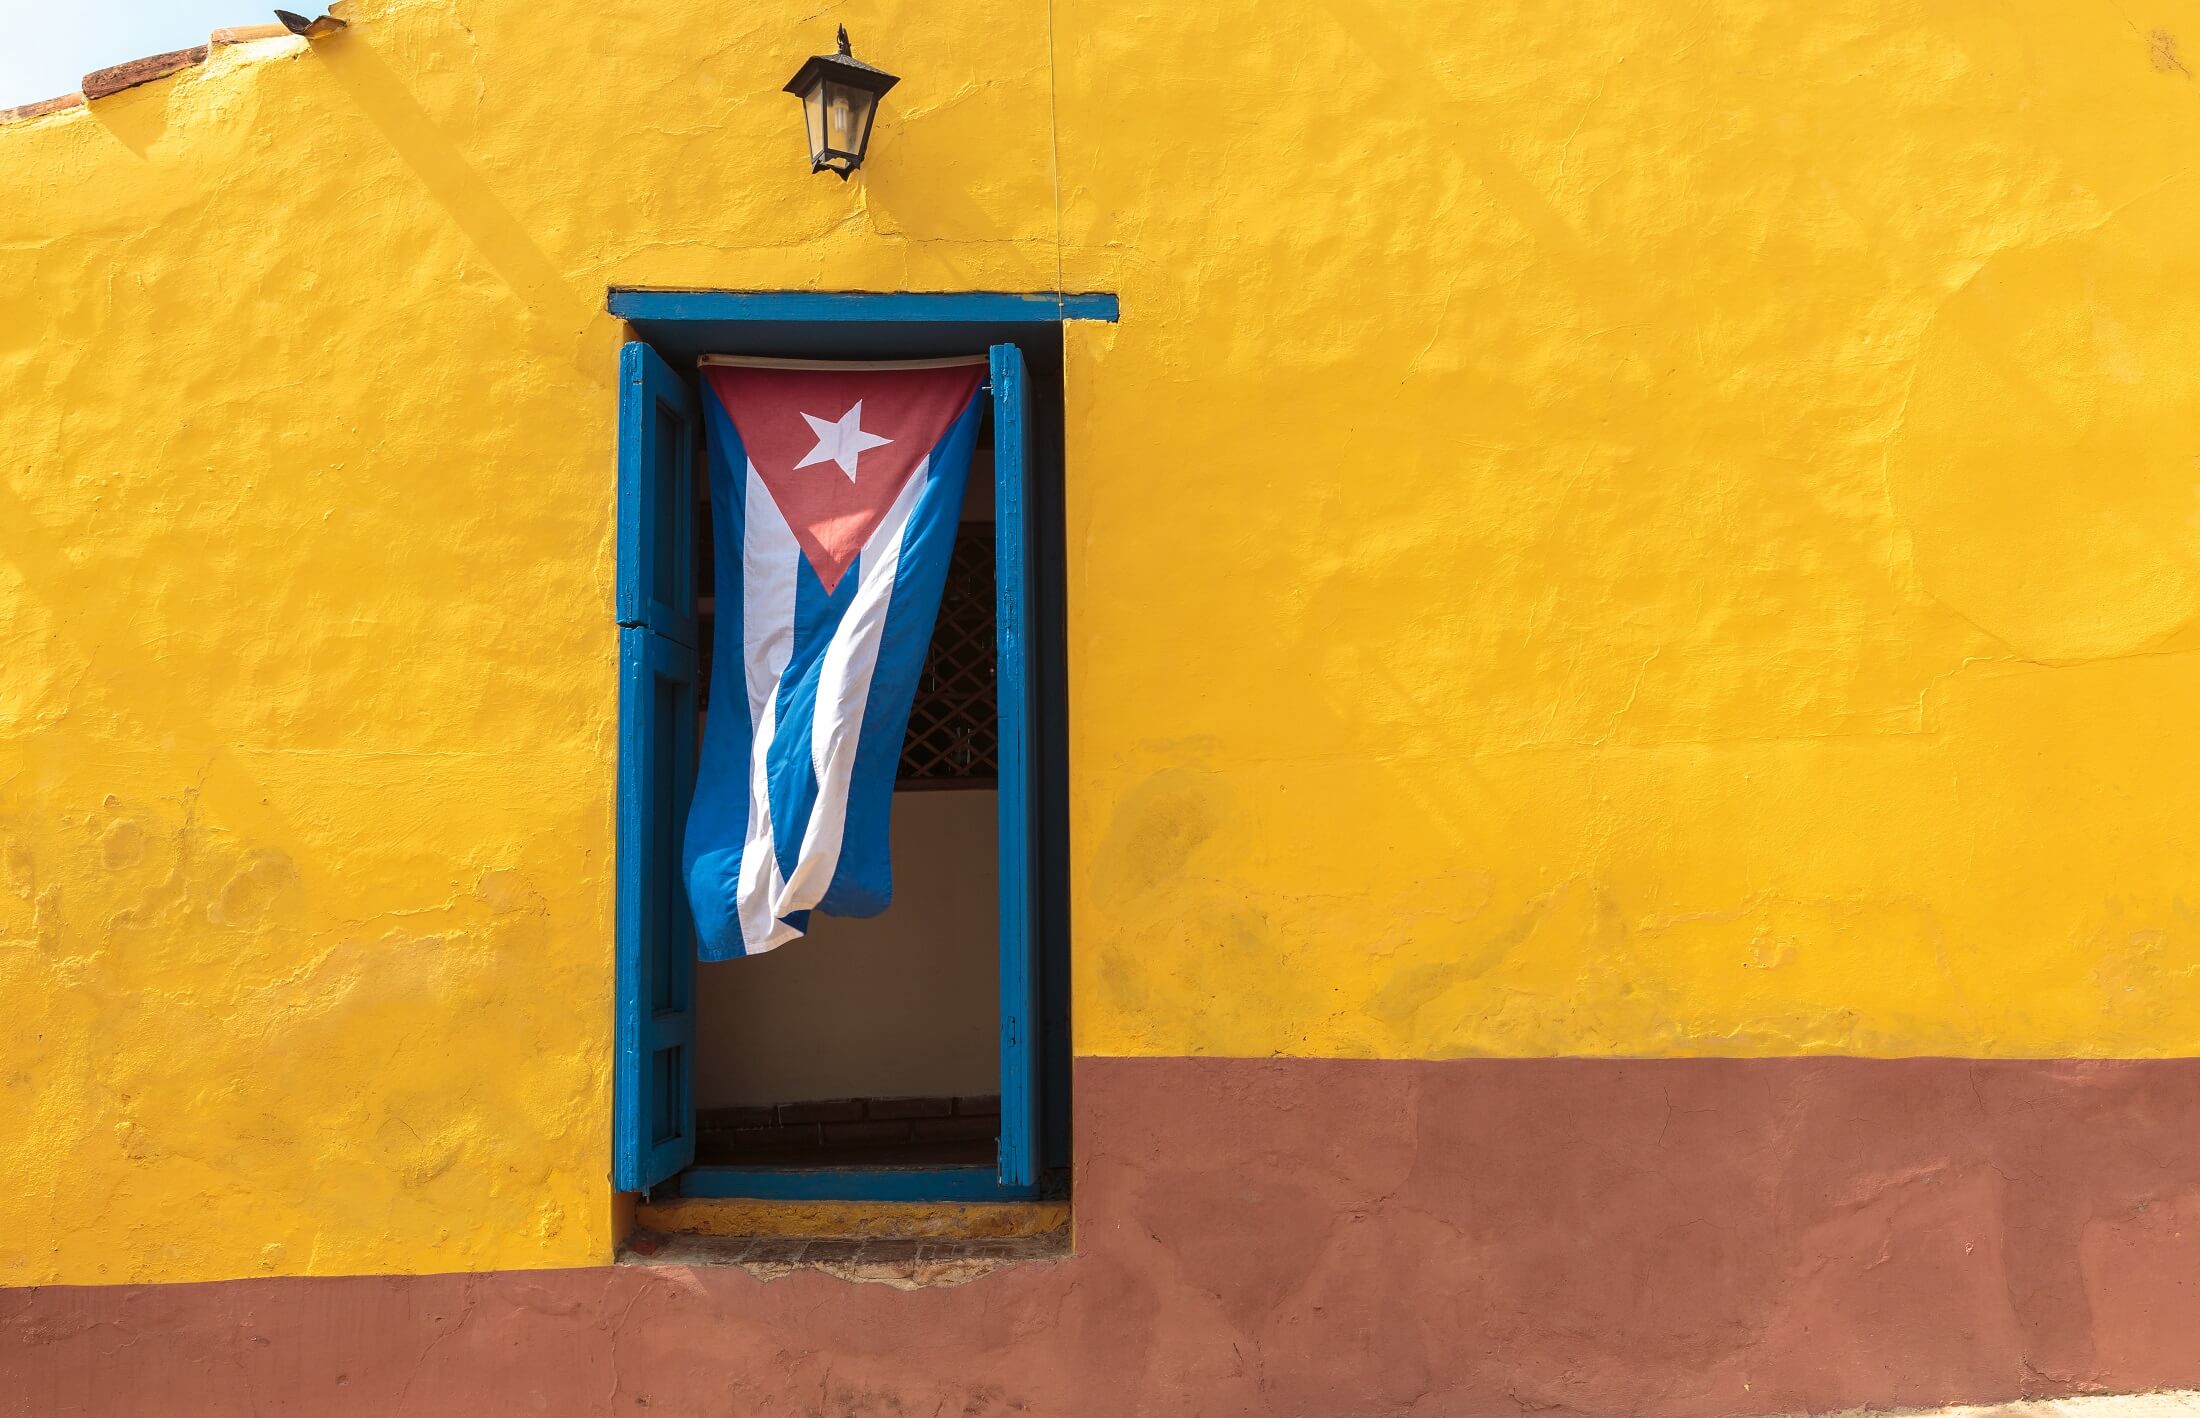 Kubańska flaga wisząca na drzwiach w Trinidad, Kuba